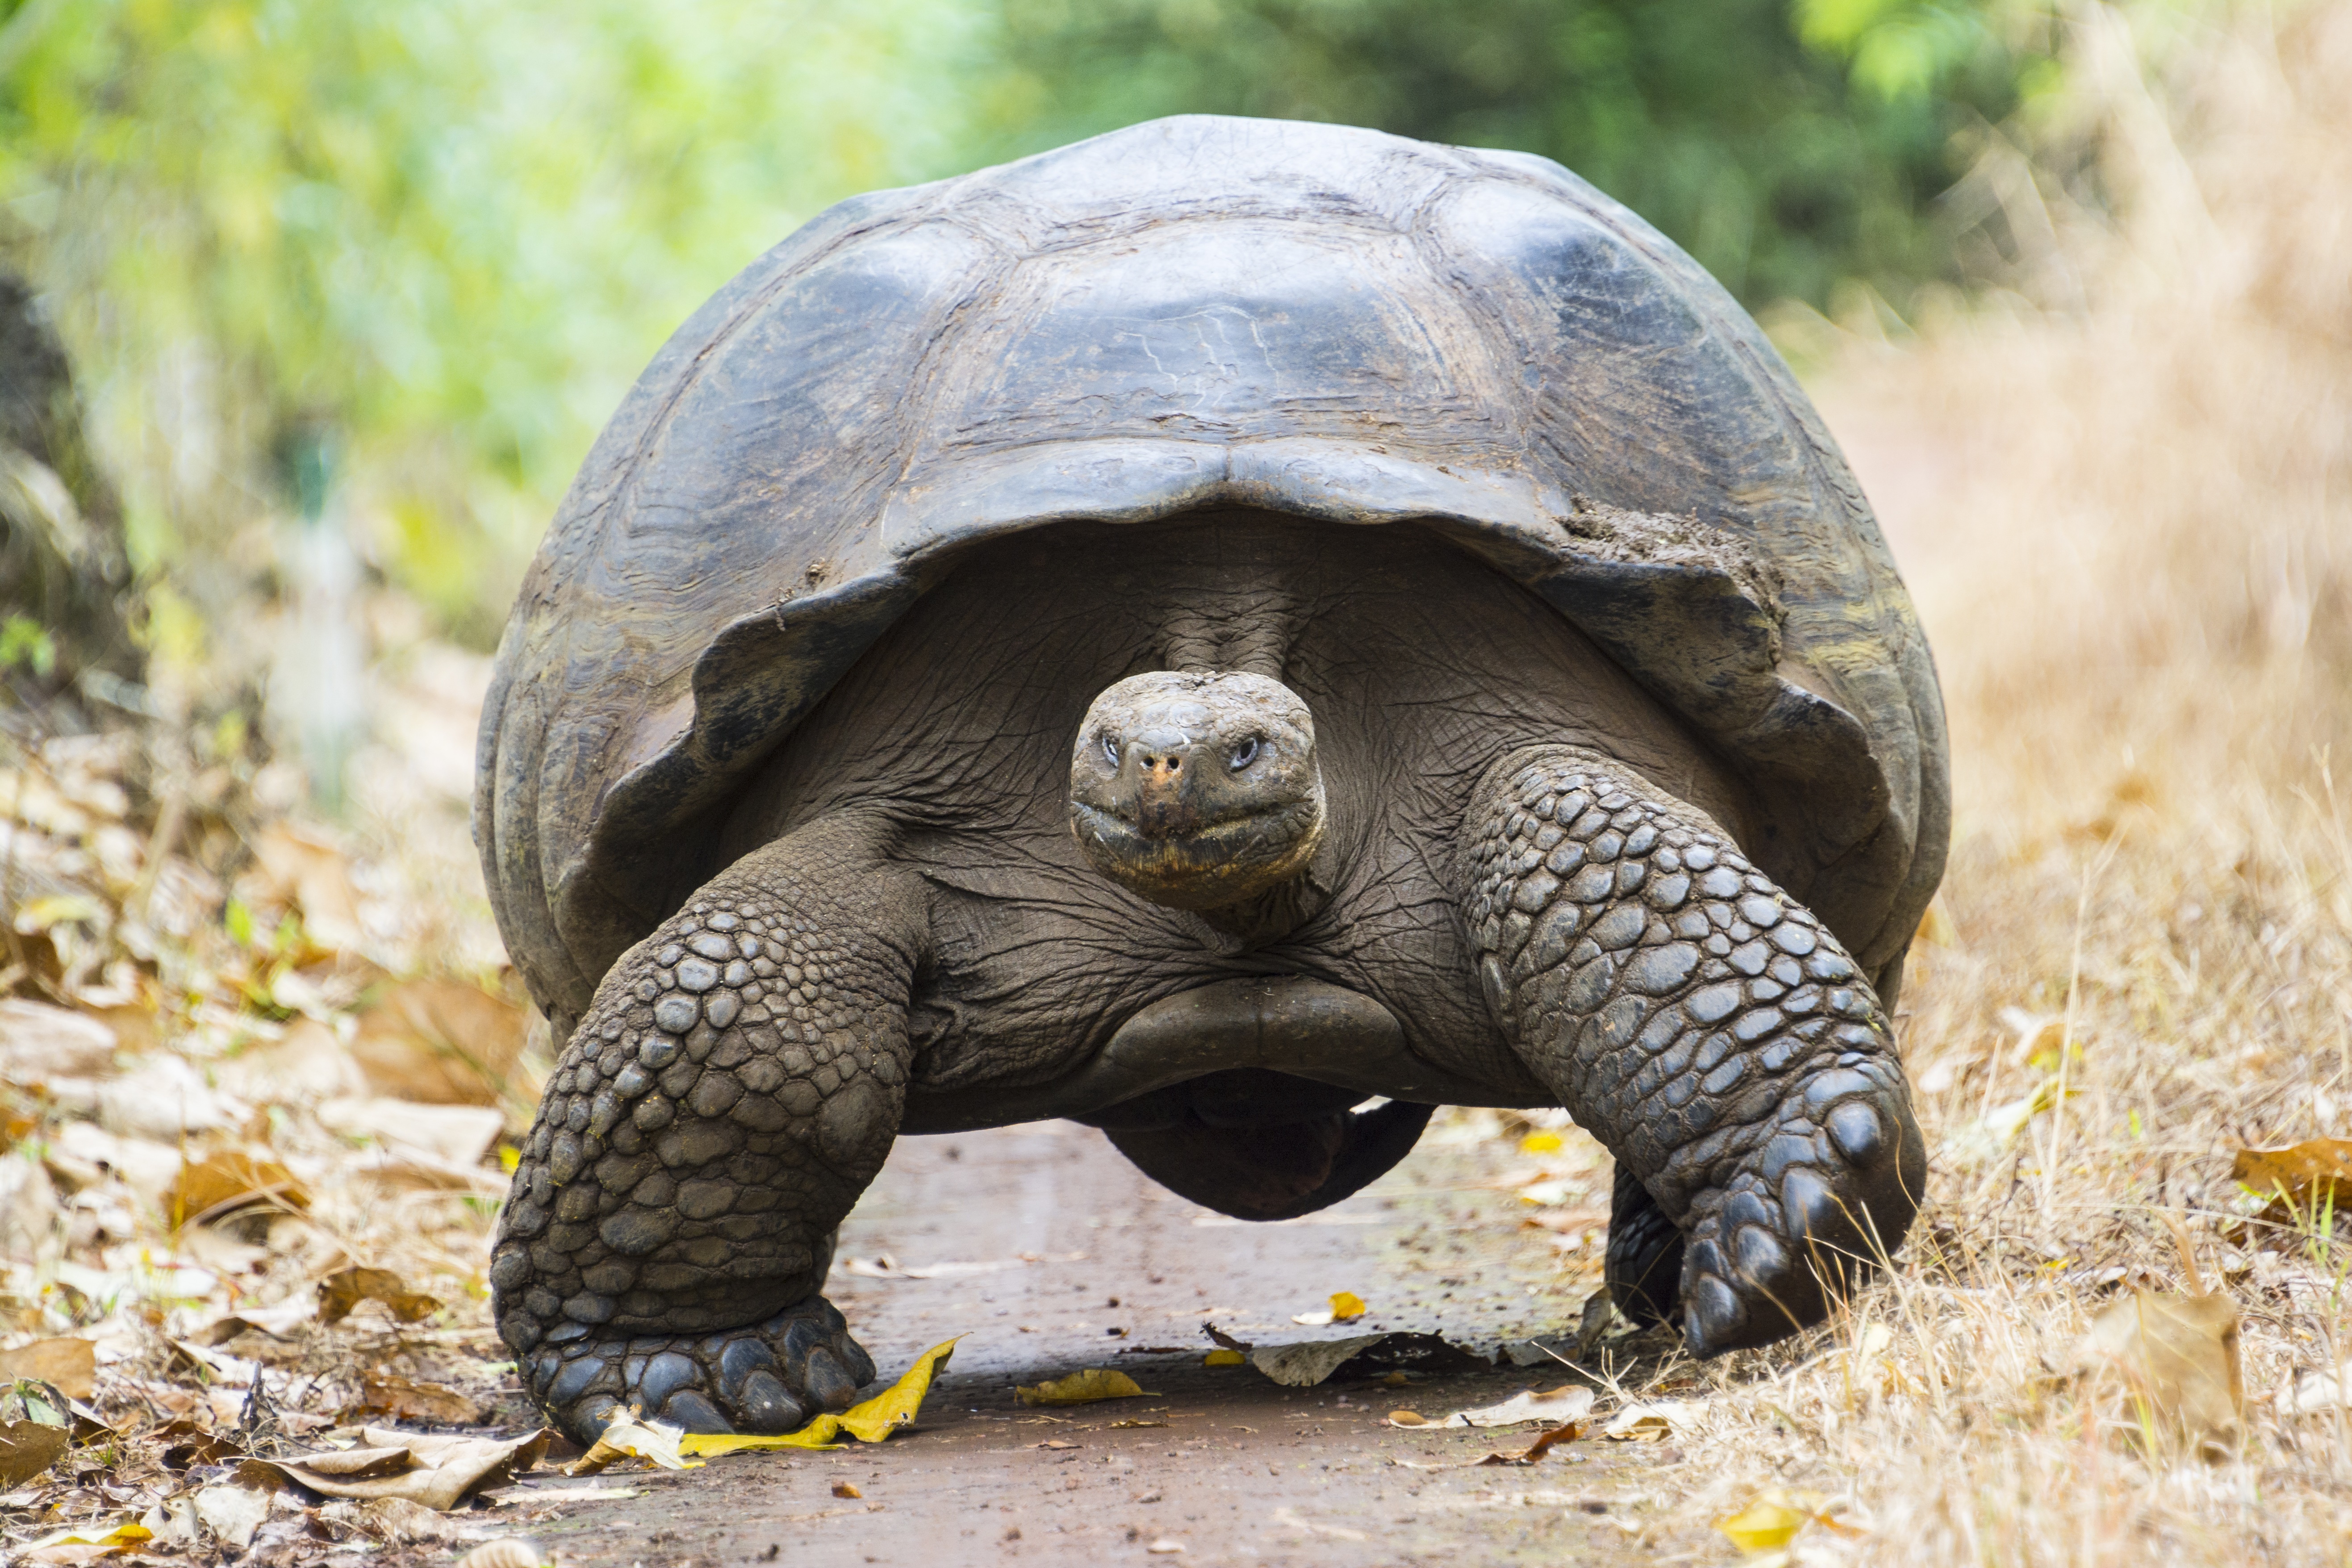 Большая галапагосская черепаха. Галапагосская гигантская черепаха. Абингдонская слоновая черепаха. Галапагосская черепаха Джордж. Галапагосская черепаха одинокий Джордж.